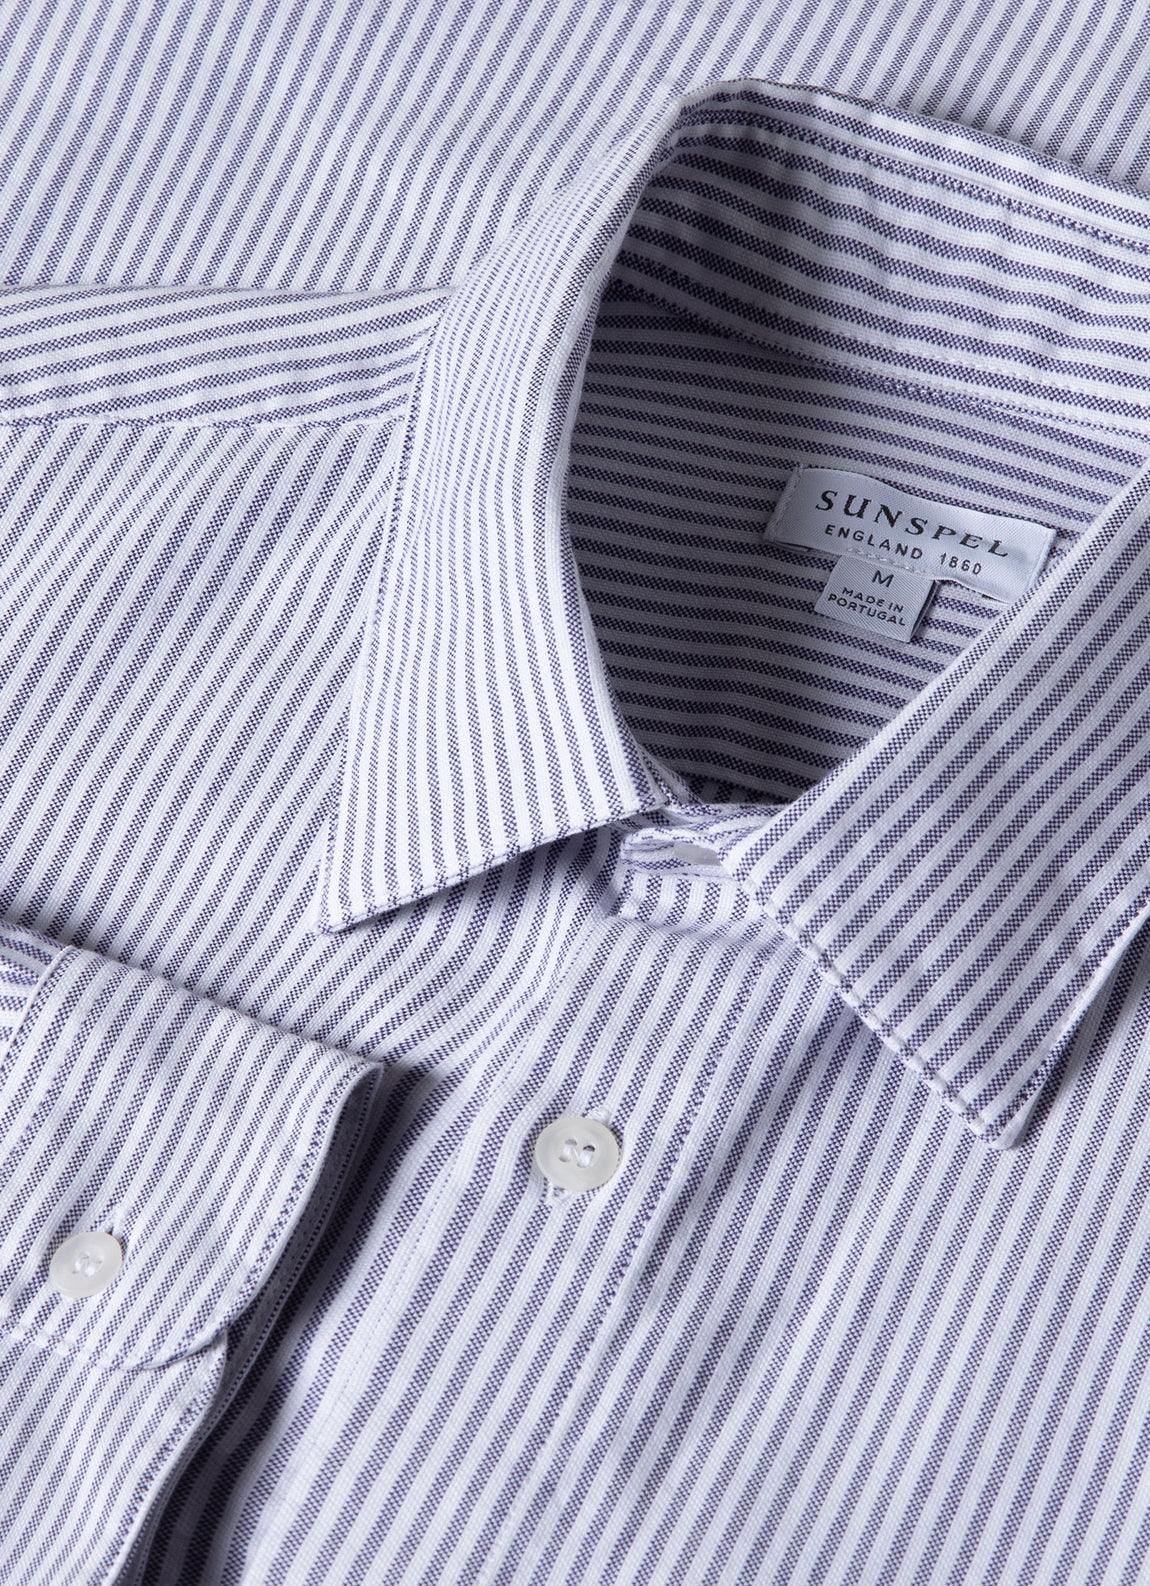 Men's Oxford Stripe Shirt in White/Navy Oxford Stripe